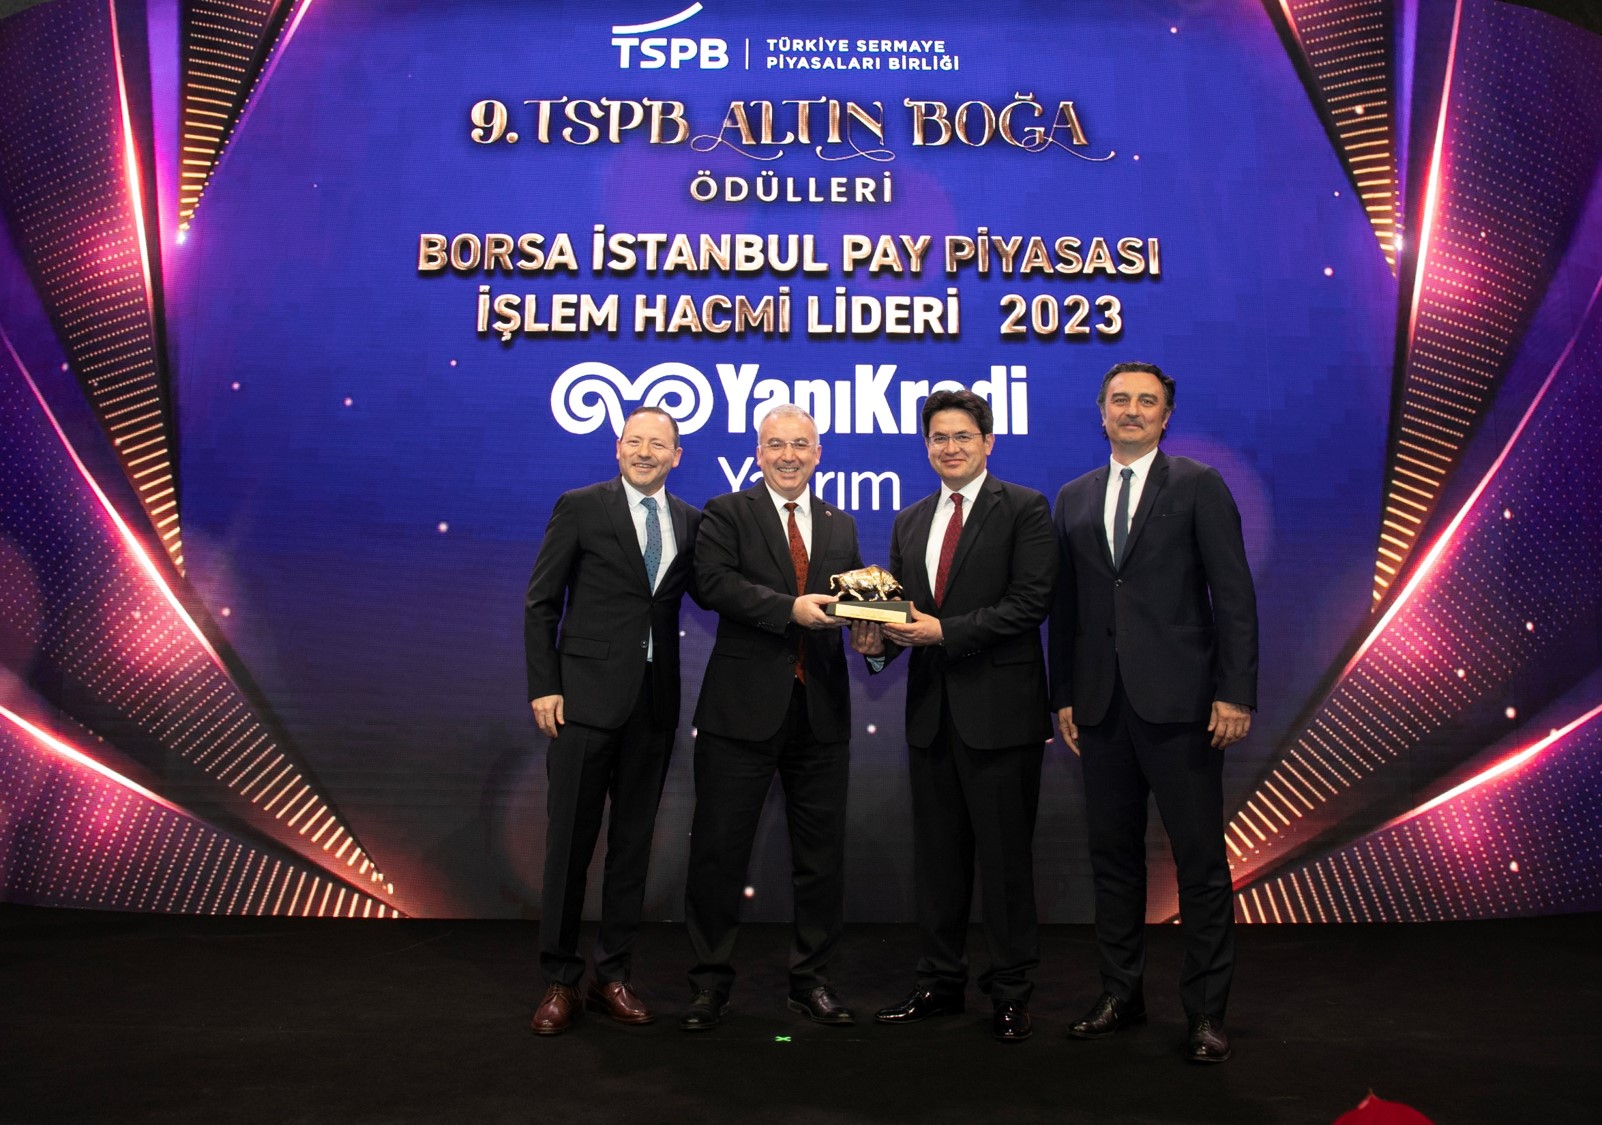 Yapı Kredi Yatırım, 9. TSPB Altın Boğa Ödülleri’nde üç alanda liderlik ödülü kazandı